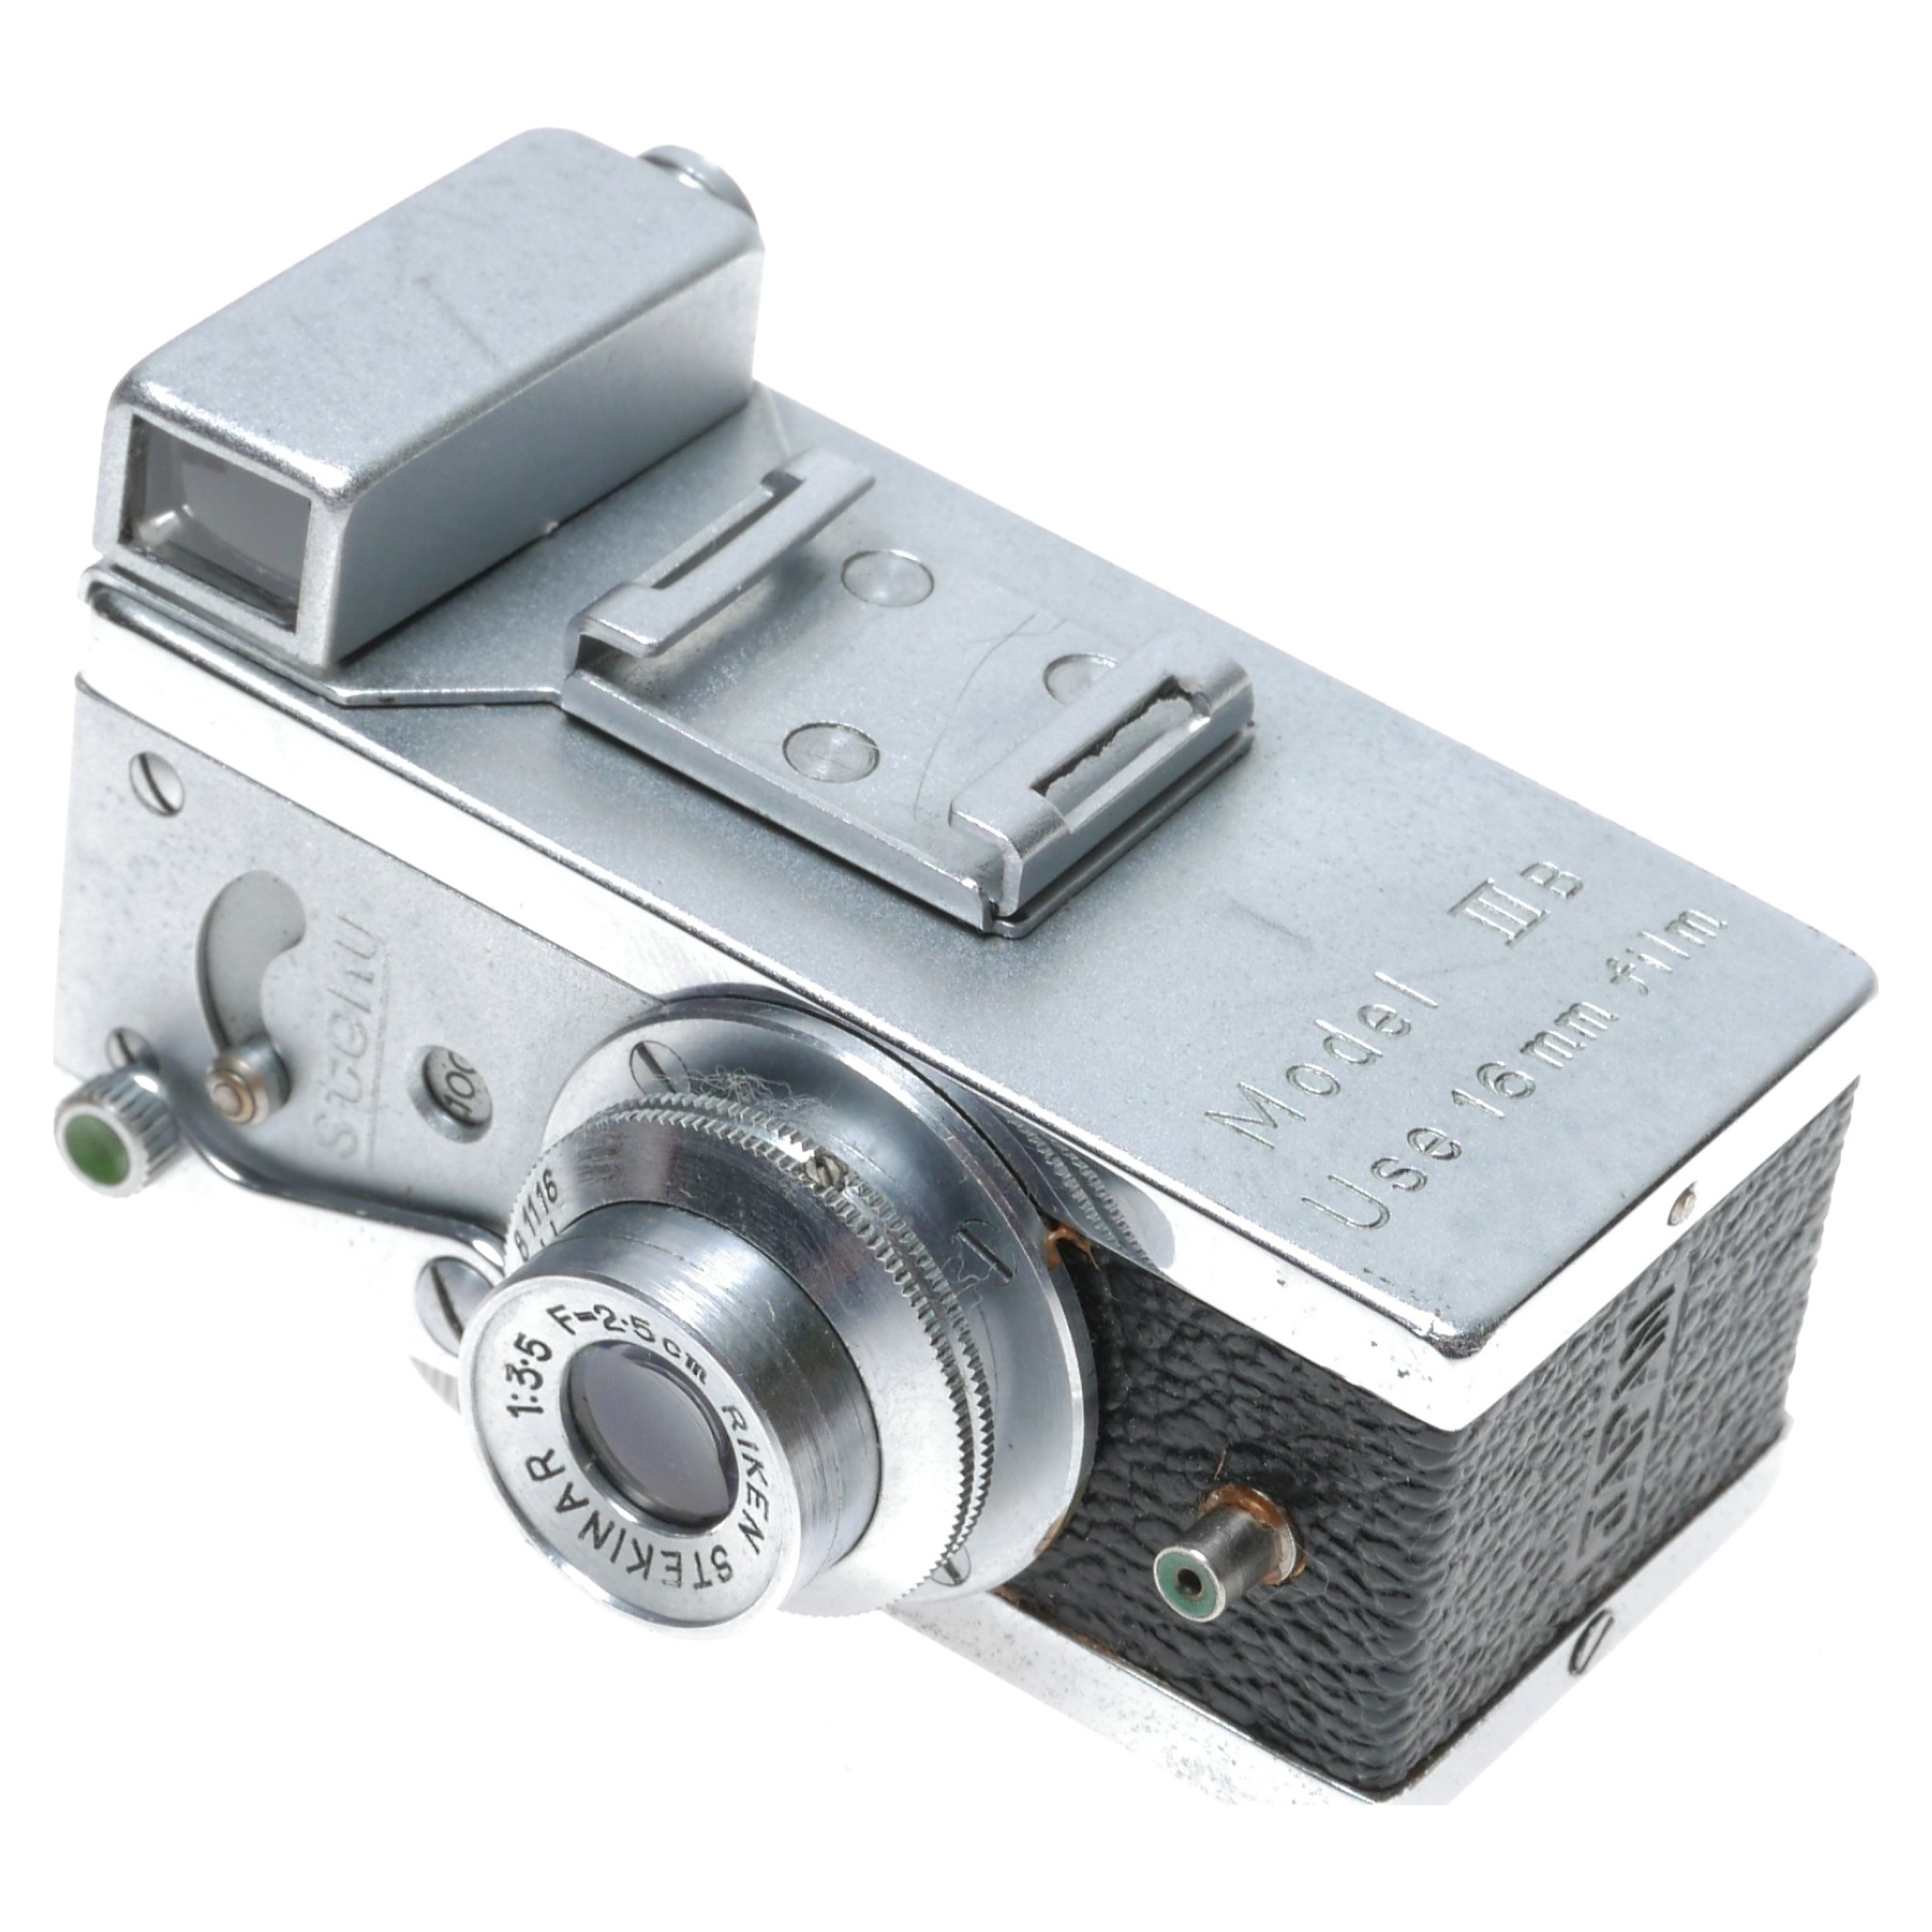 Steky Model III B Miniature Caméra avec changement Objectivement RIKEN stekinar 1:3 .5 25 mm 